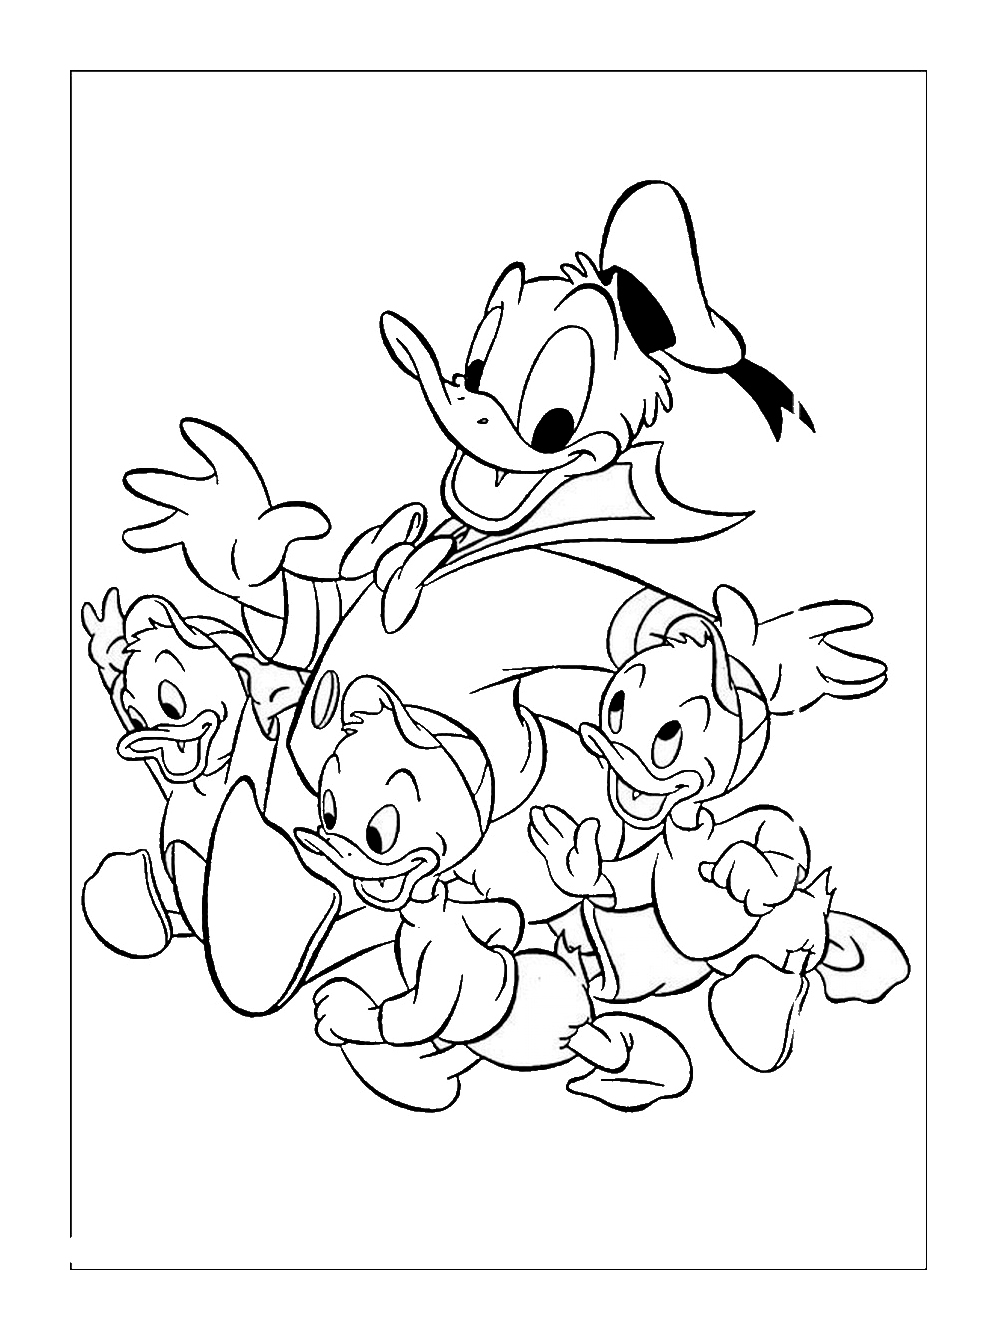 Donald e os seus sobrinhos para colorir